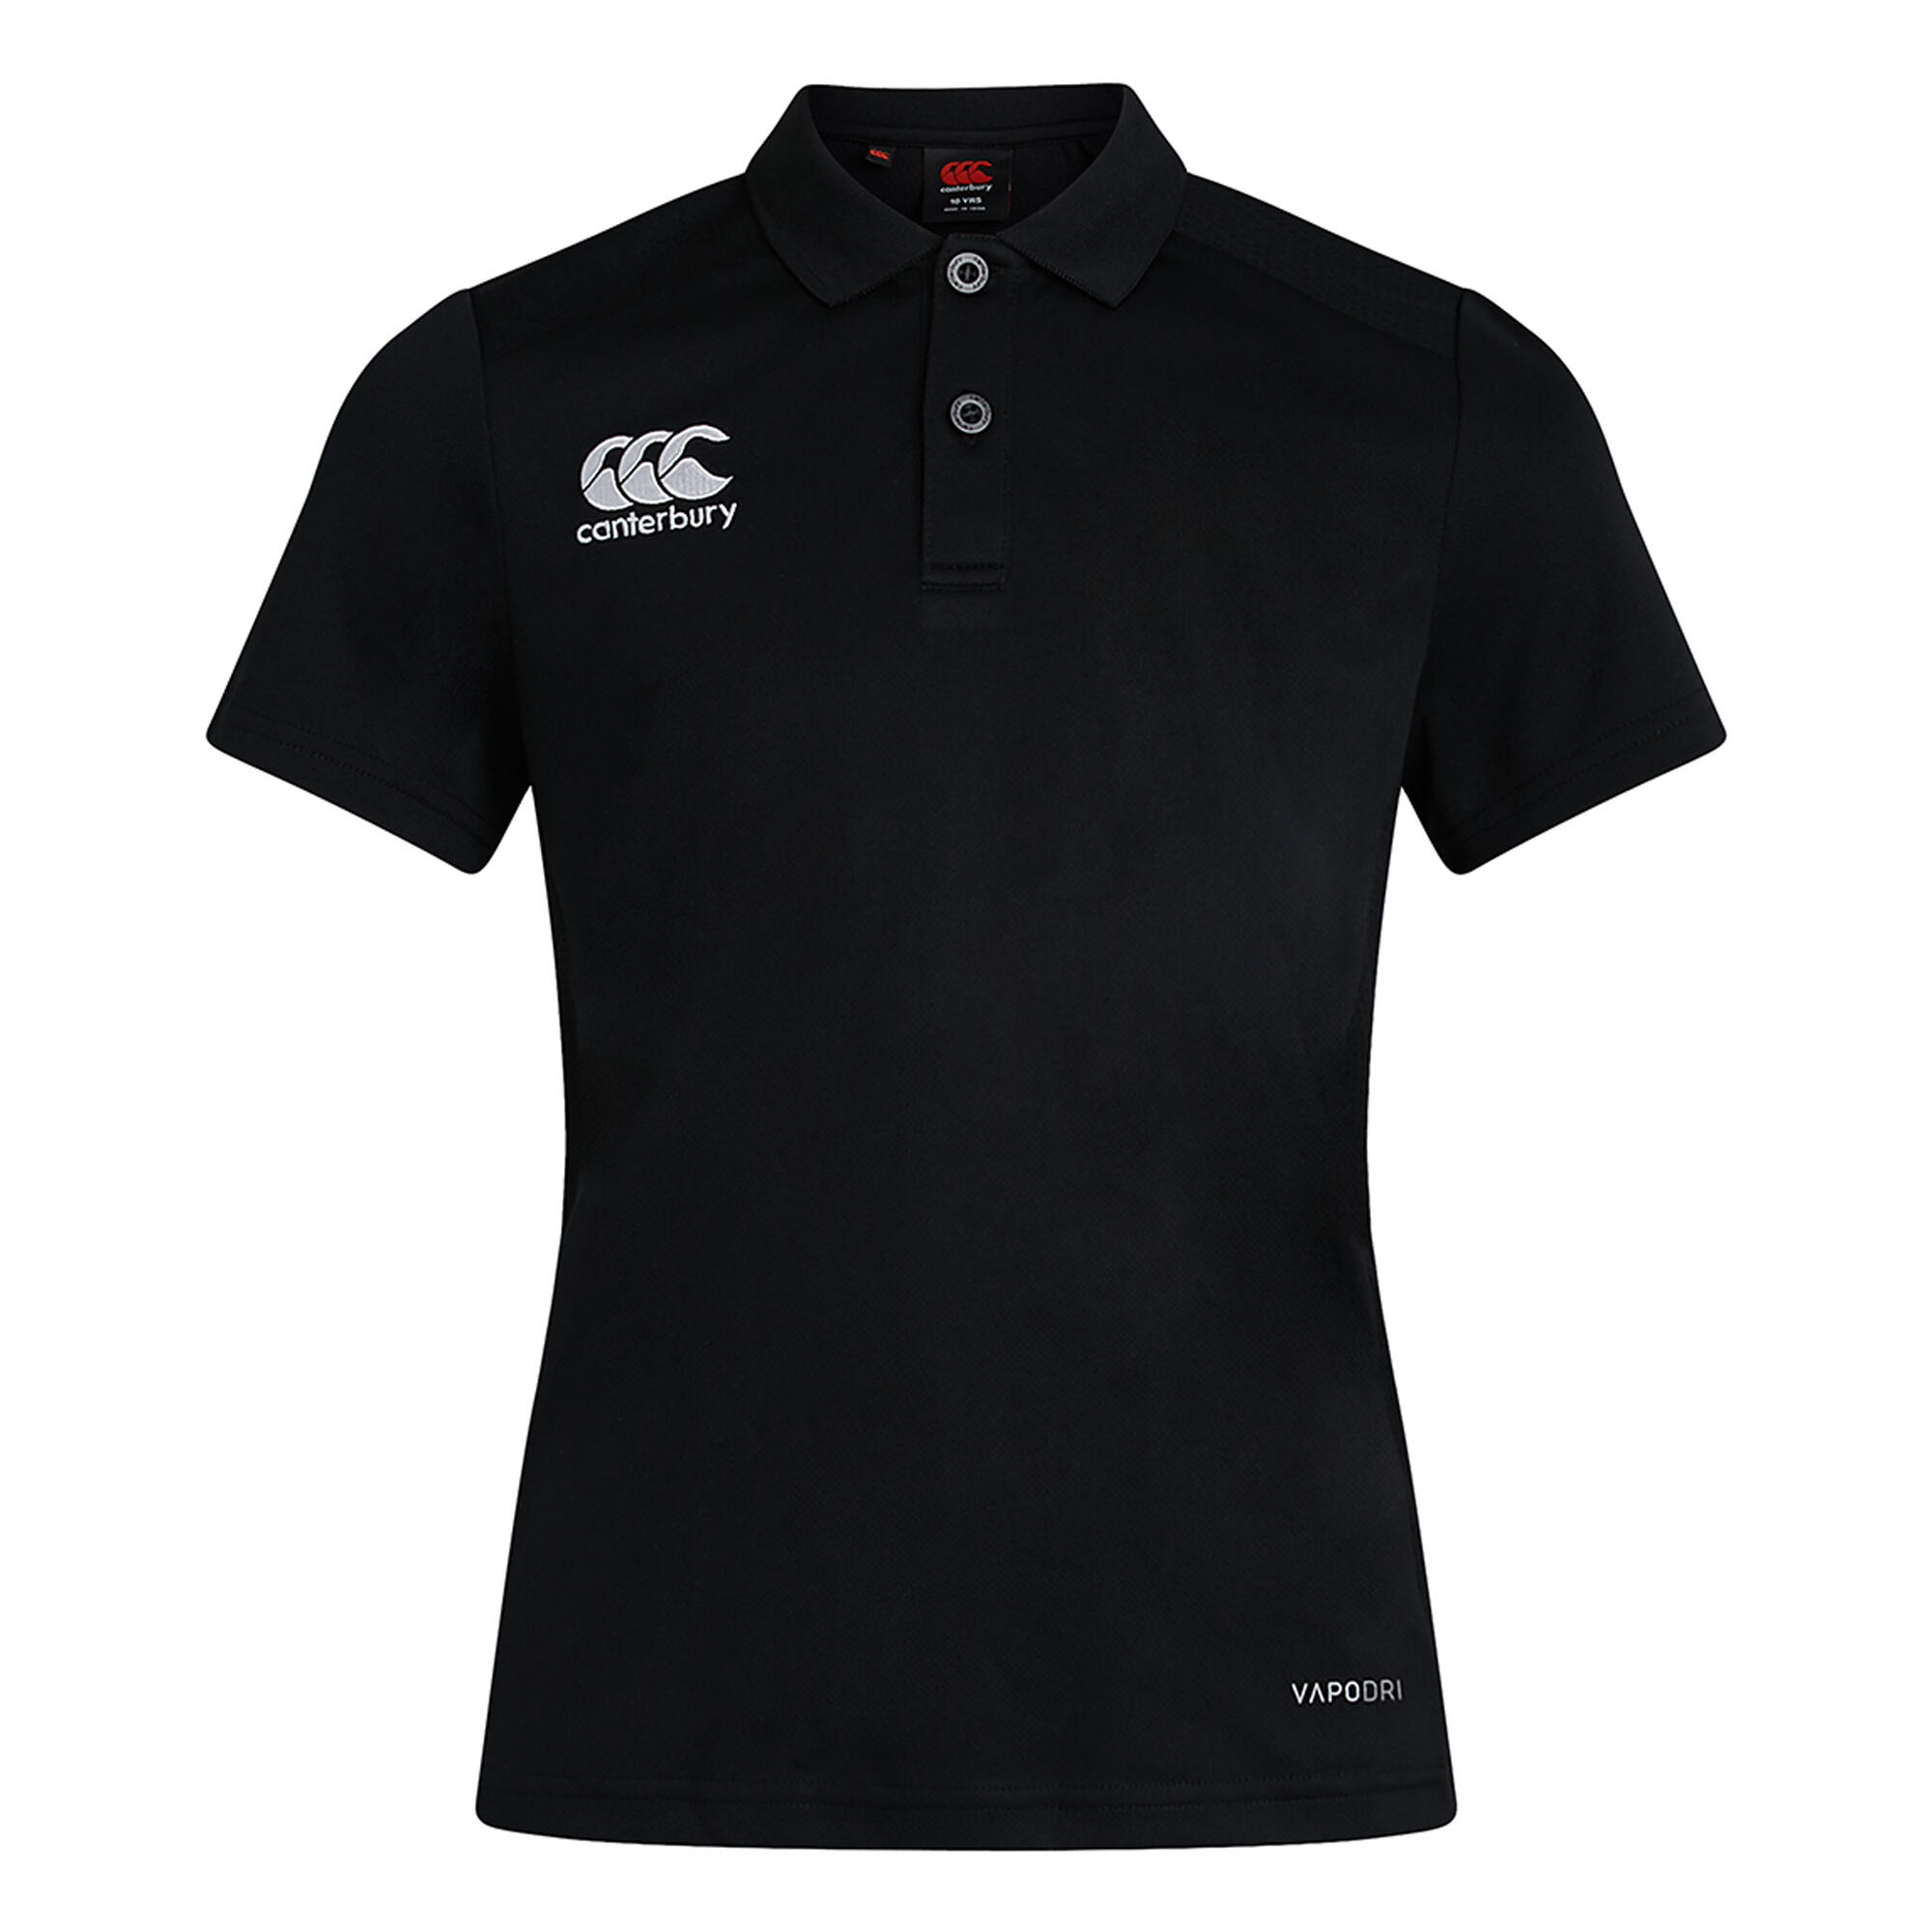 CANTERBURY Womens/Ladies Club Dry Polo Shirt (Black)